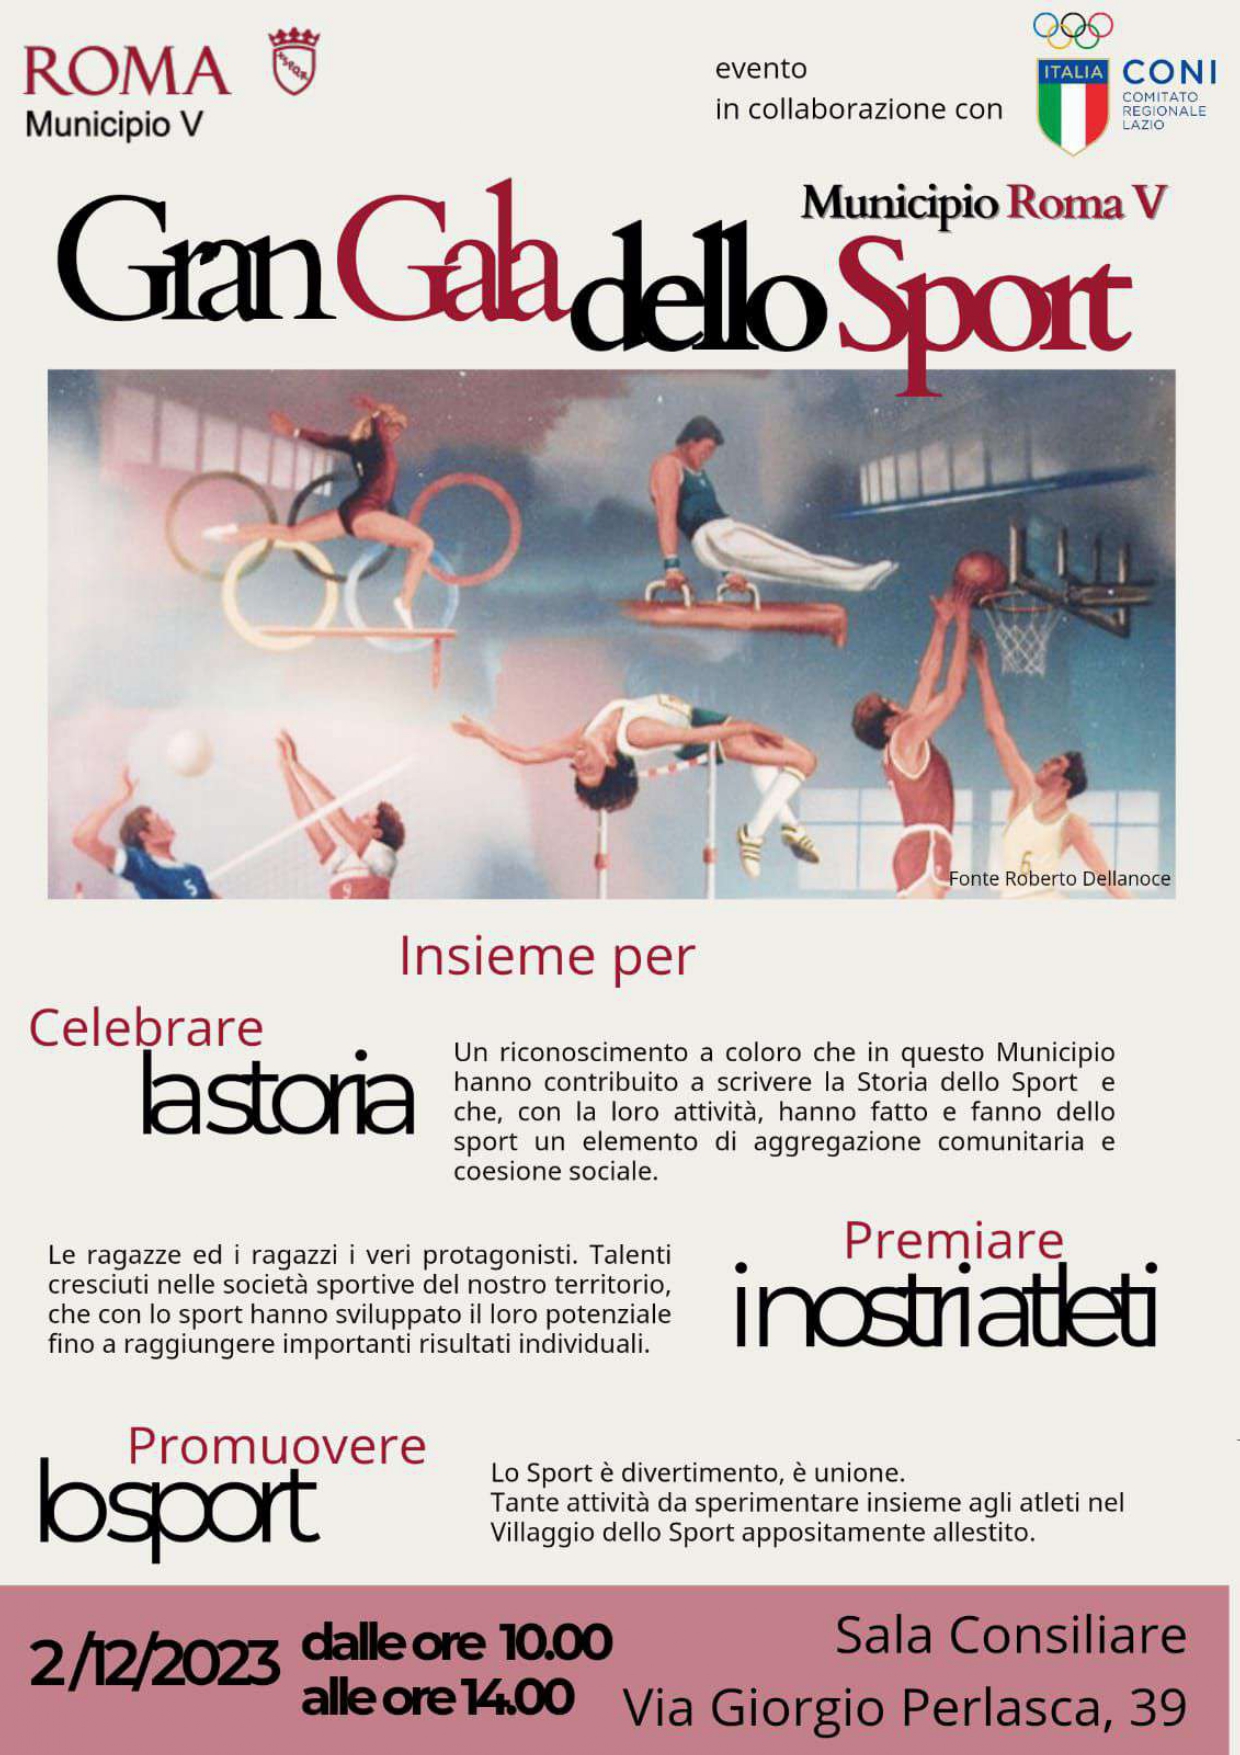 images/Gran_Gala_dello_Sport_page-0001.jpg